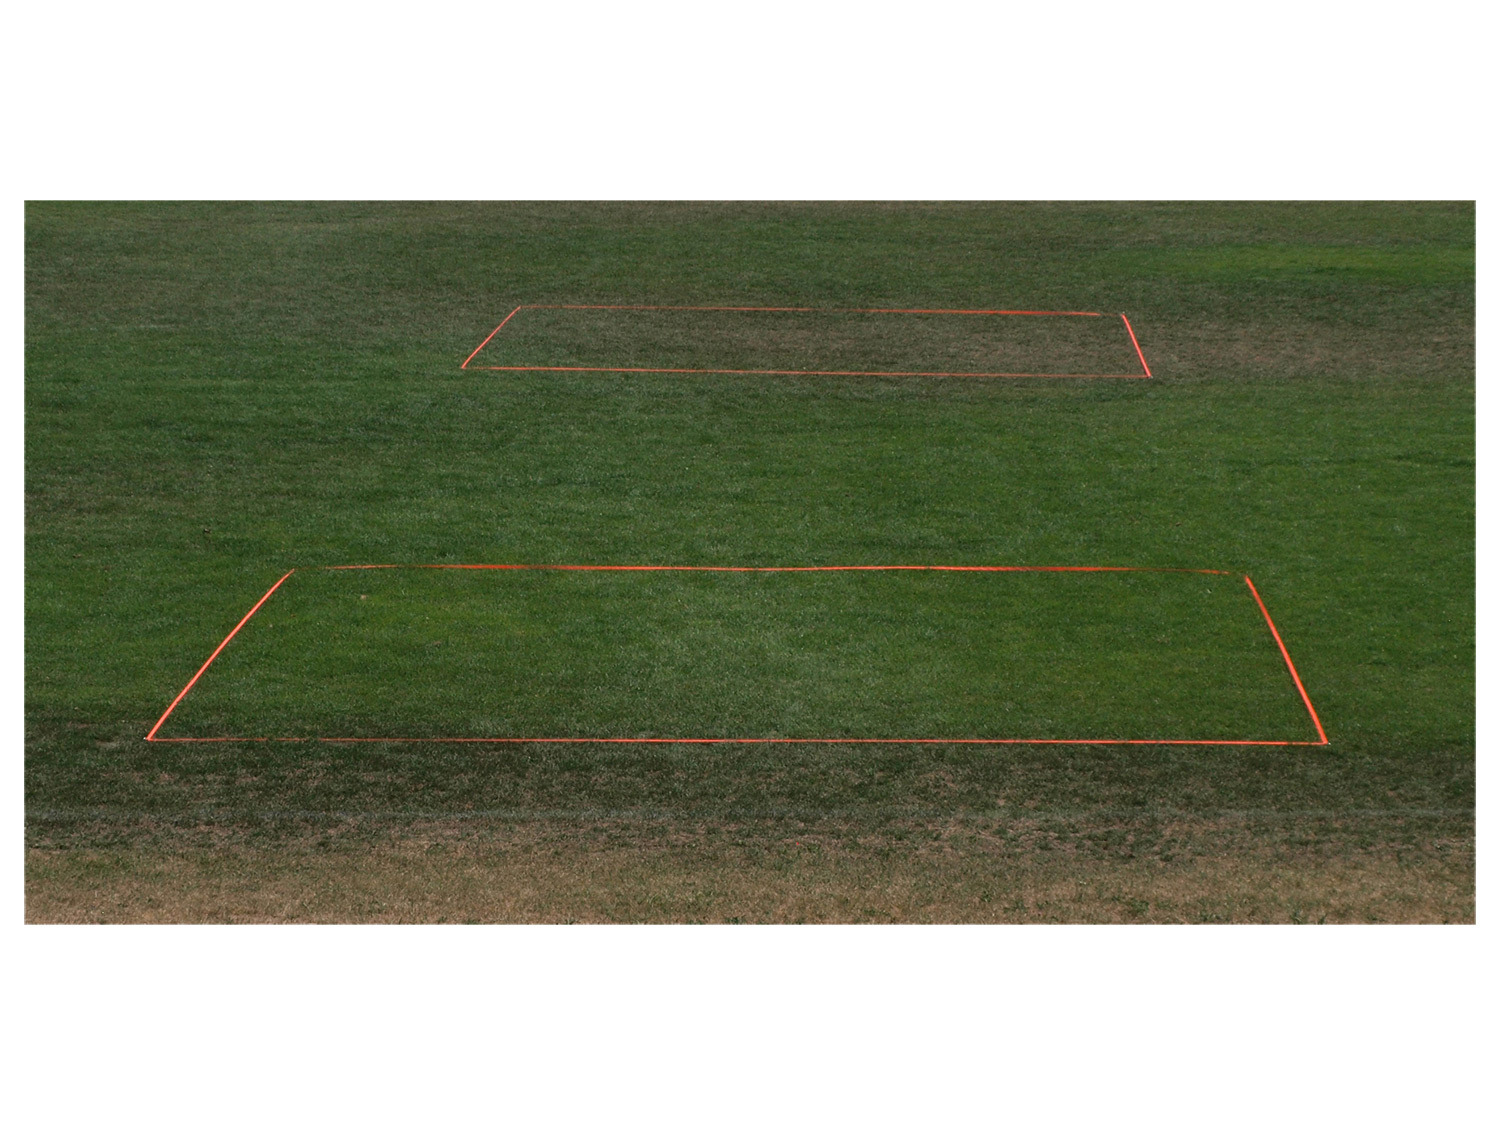 Talbot-Torro Speed Badminton Spielfeld Court Lines